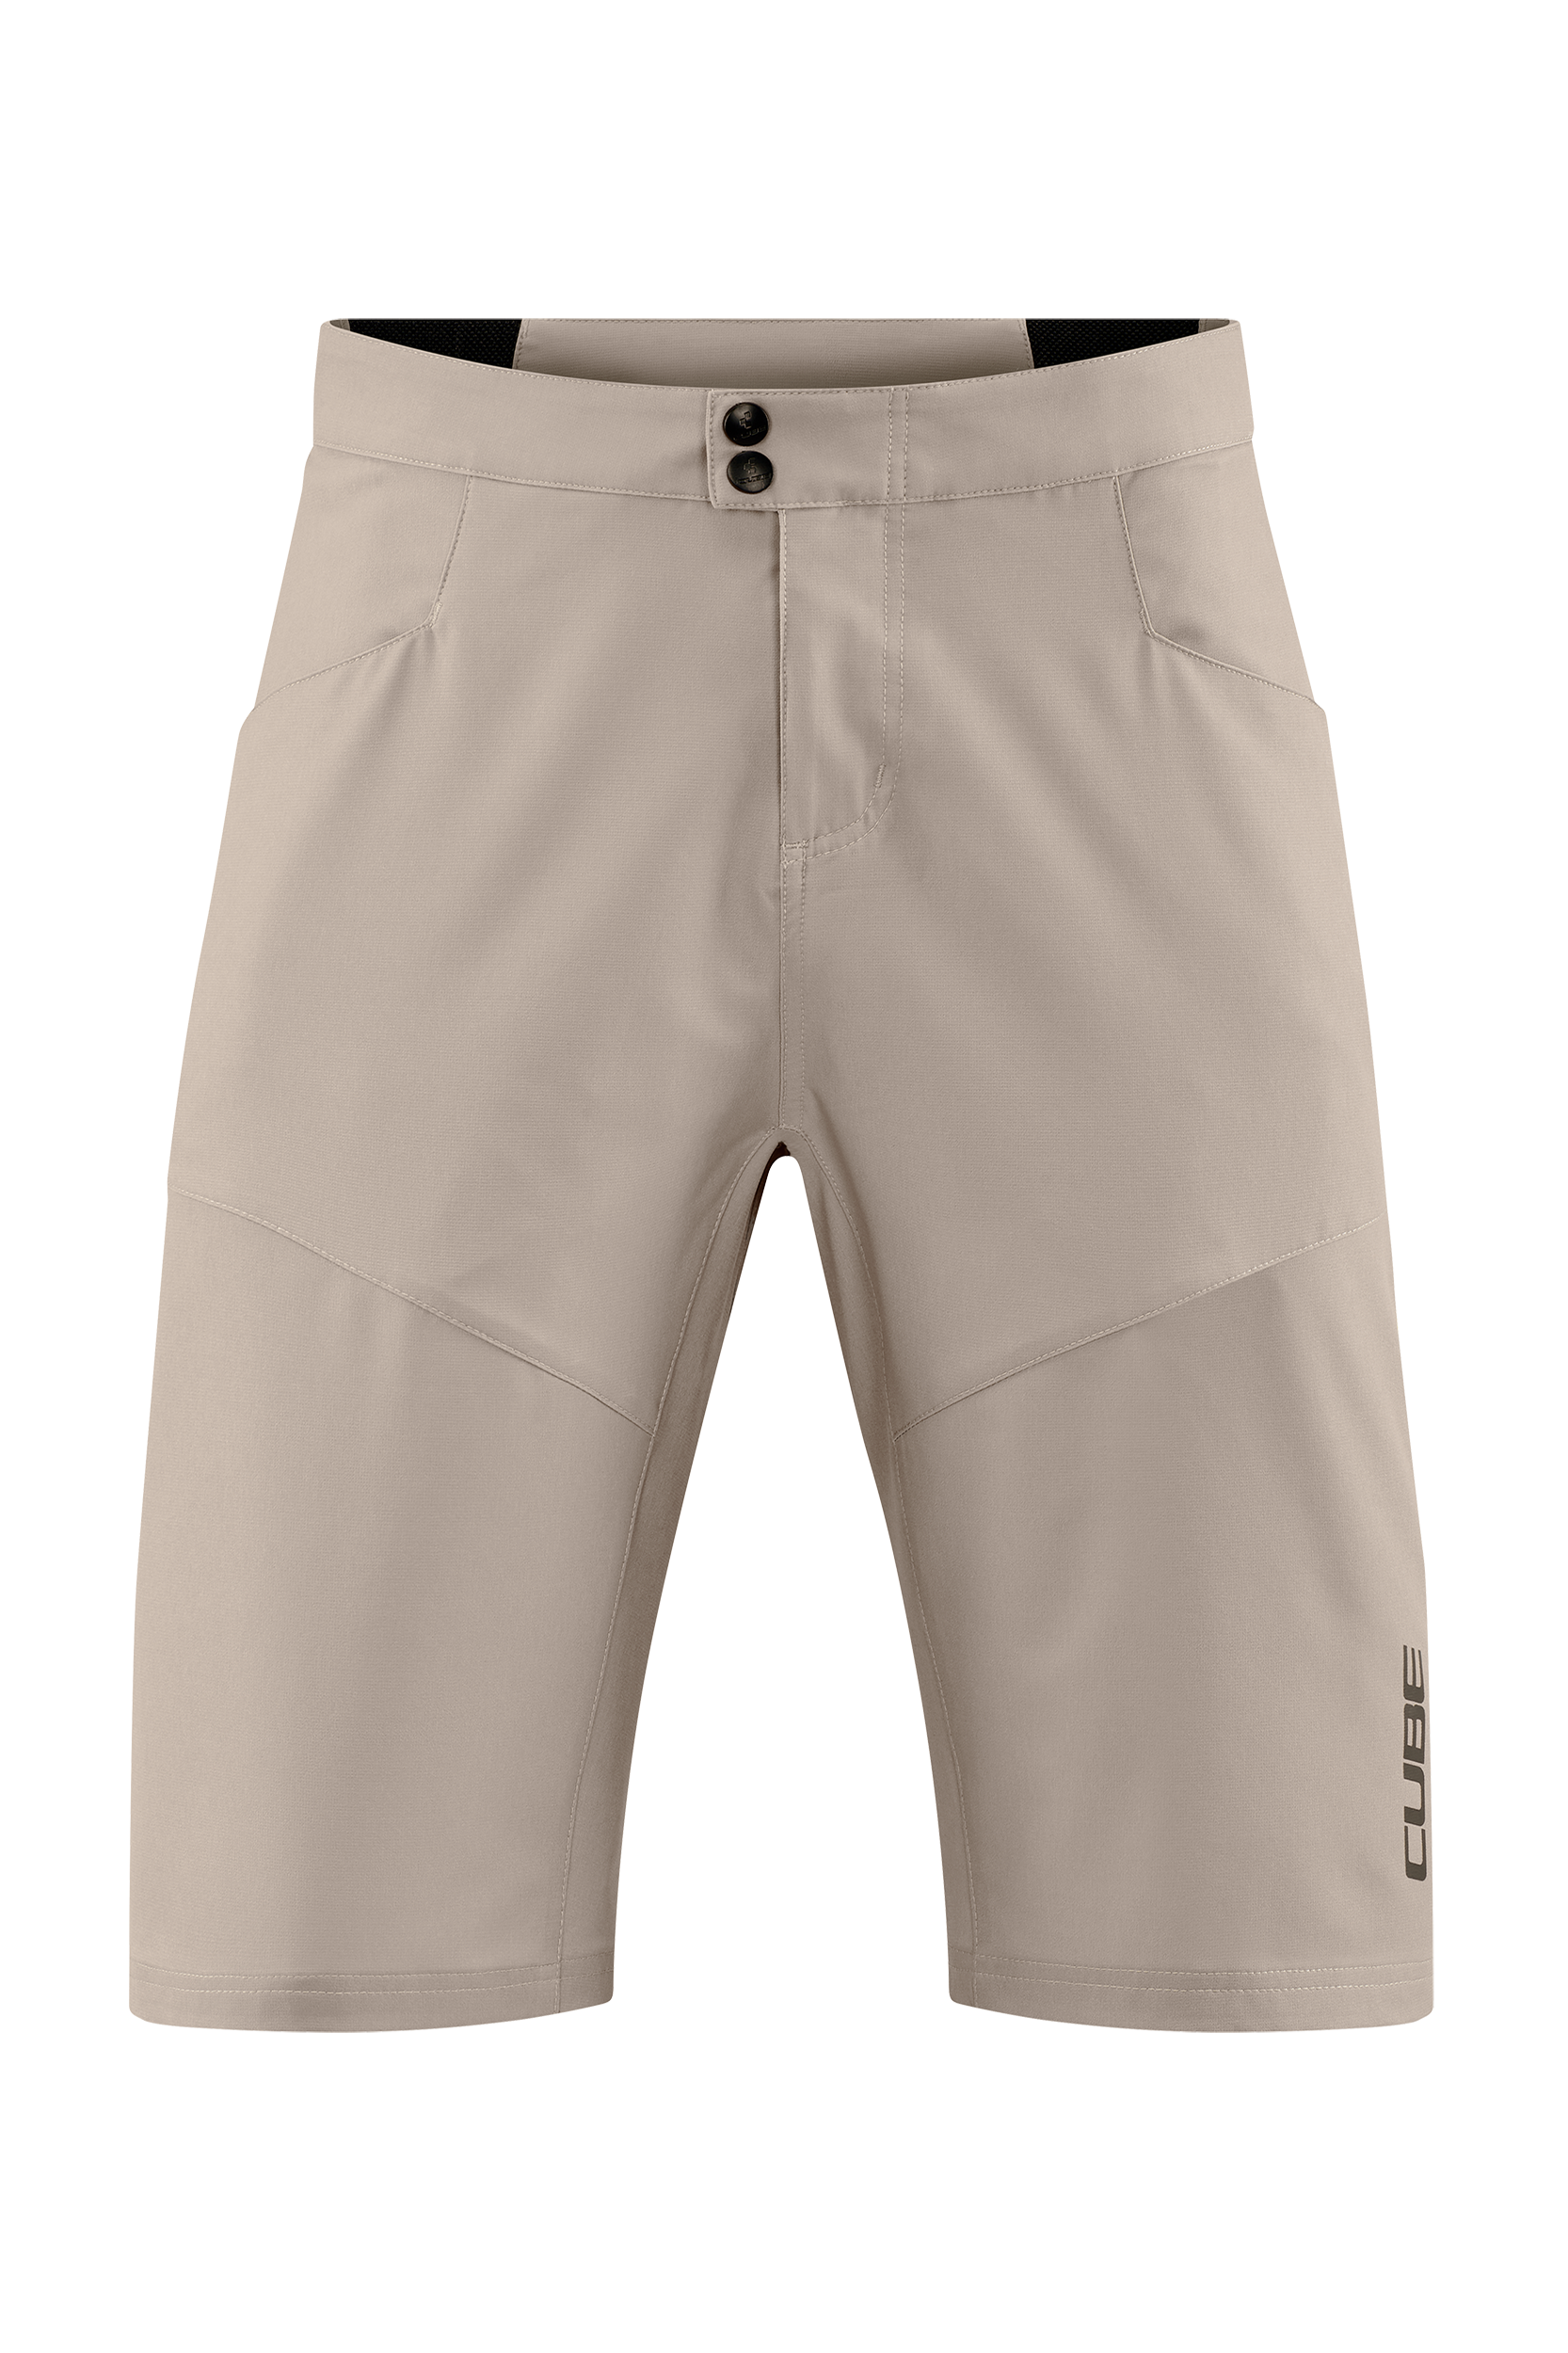 CUBE ATX Baggy Shorts CMPT incl. Liner Shorts